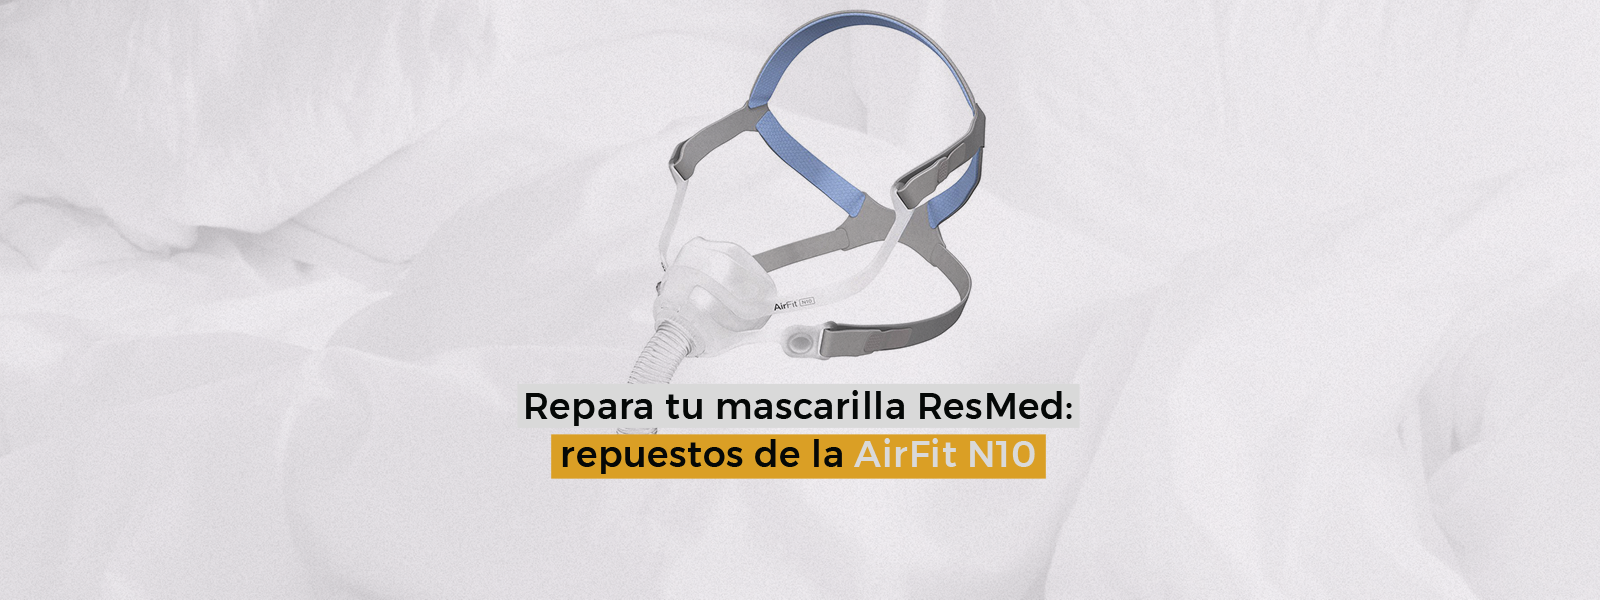 Repara tu mascarilla ResMed: repuestos de la AirFit N10